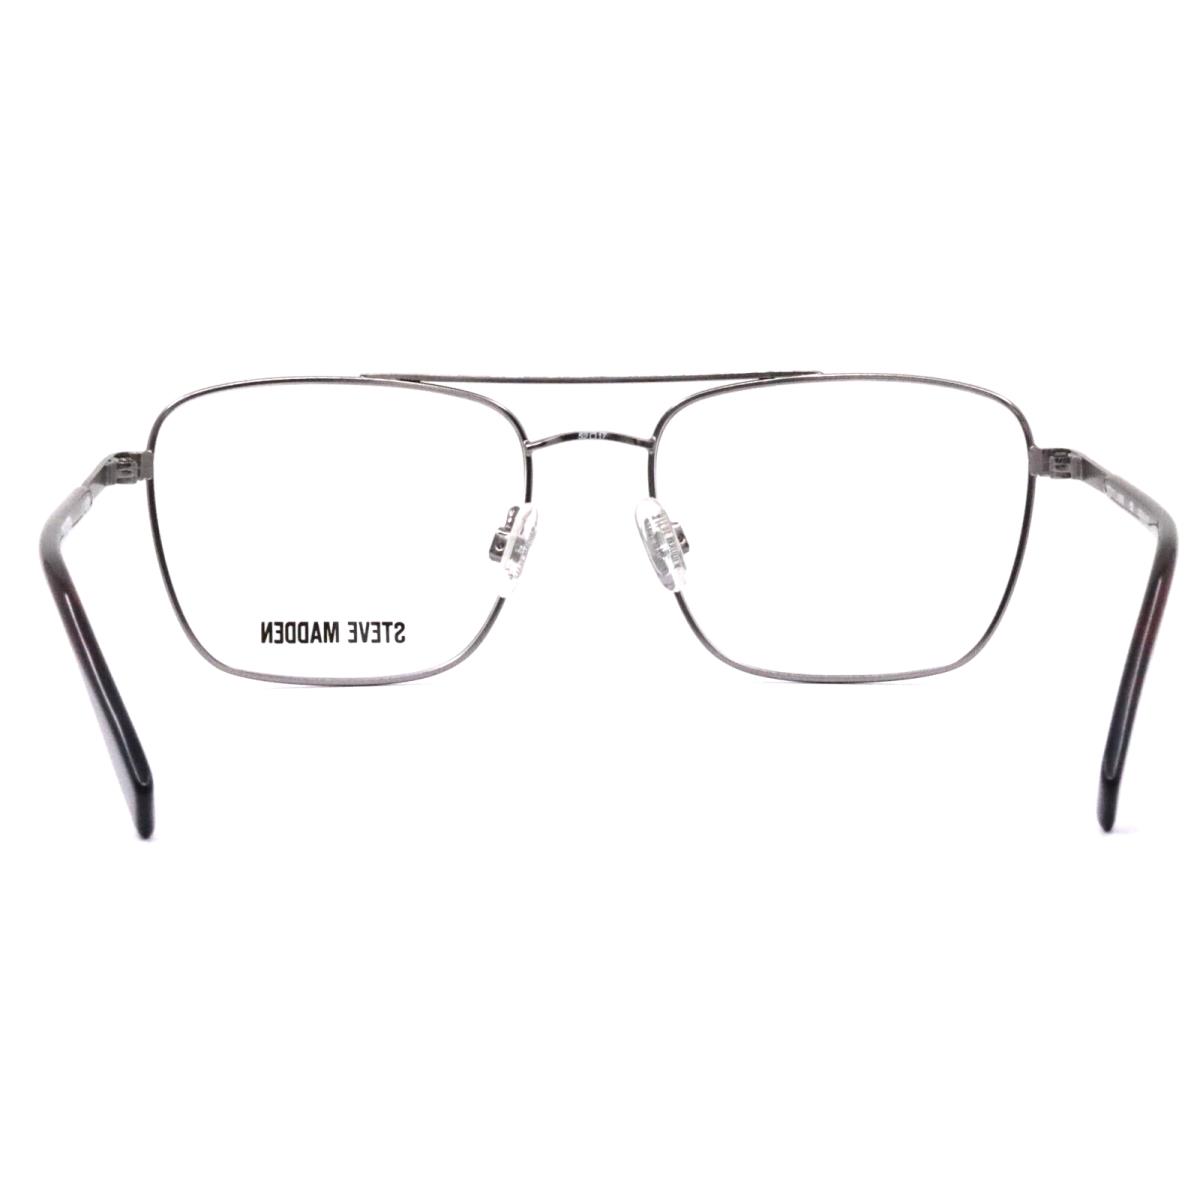 Steve Madden eyeglasses Revealled - Burgundy Frame 5